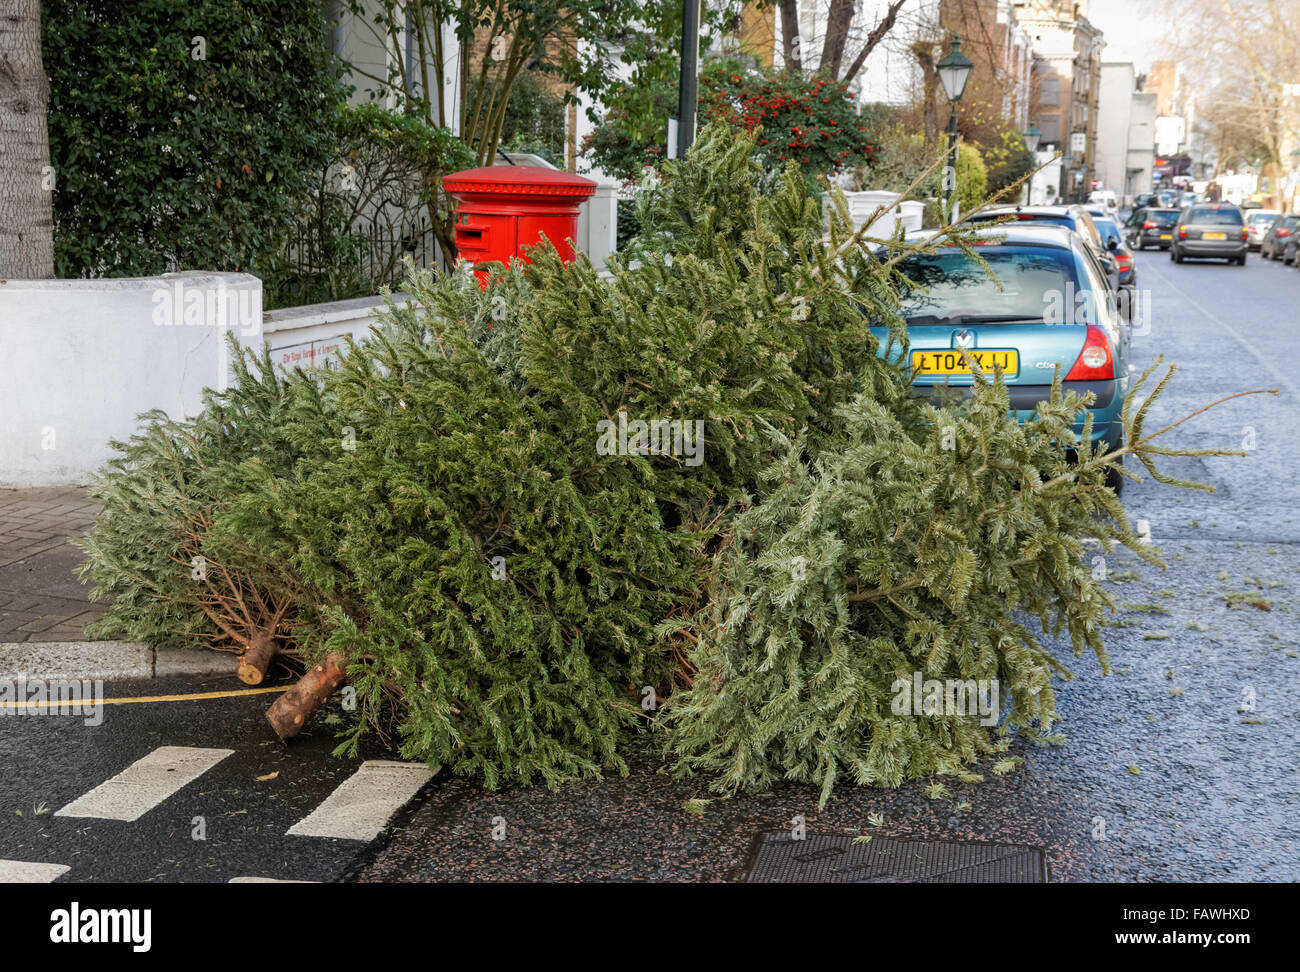 Arbres de Noël à gauche dans la rue, Londres Angleterre Royaume-Uni UK Banque D'Images